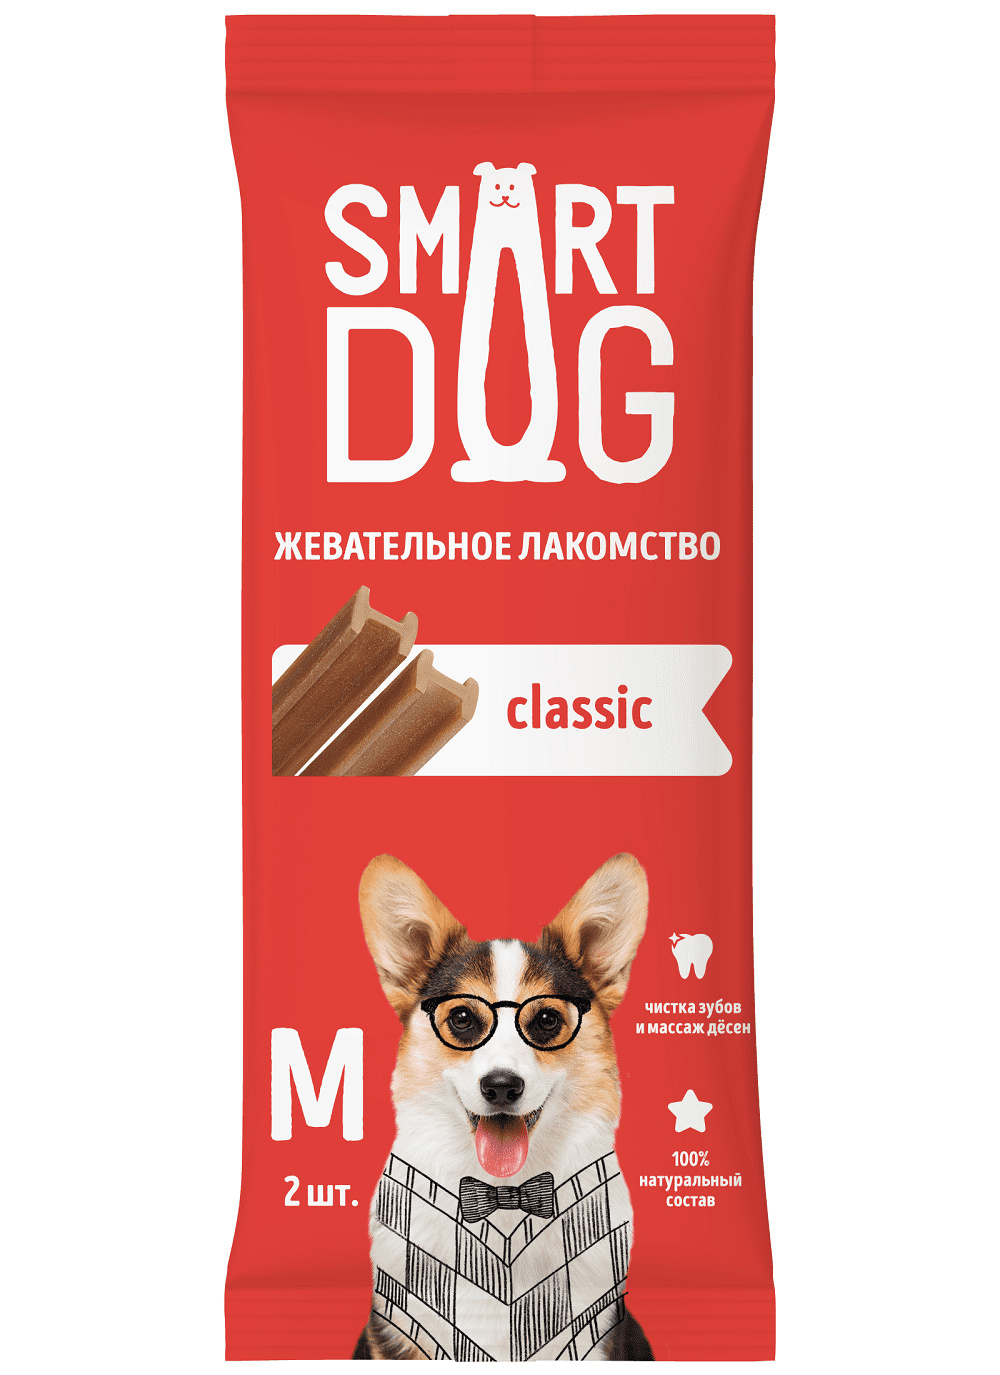 Smart Dog лакомства Smart Dog лакомства жевательное лакомство с витаминами и минералами для собак и щенков (M)